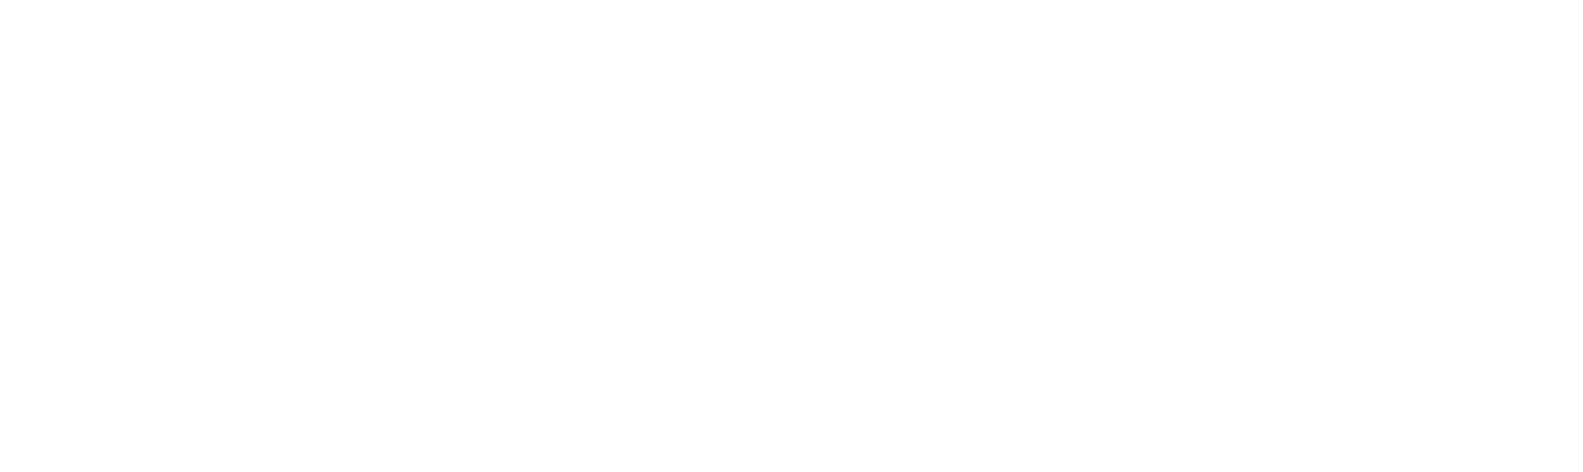 Kodiak Gas Services logo large for dark backgrounds (transparent PNG)